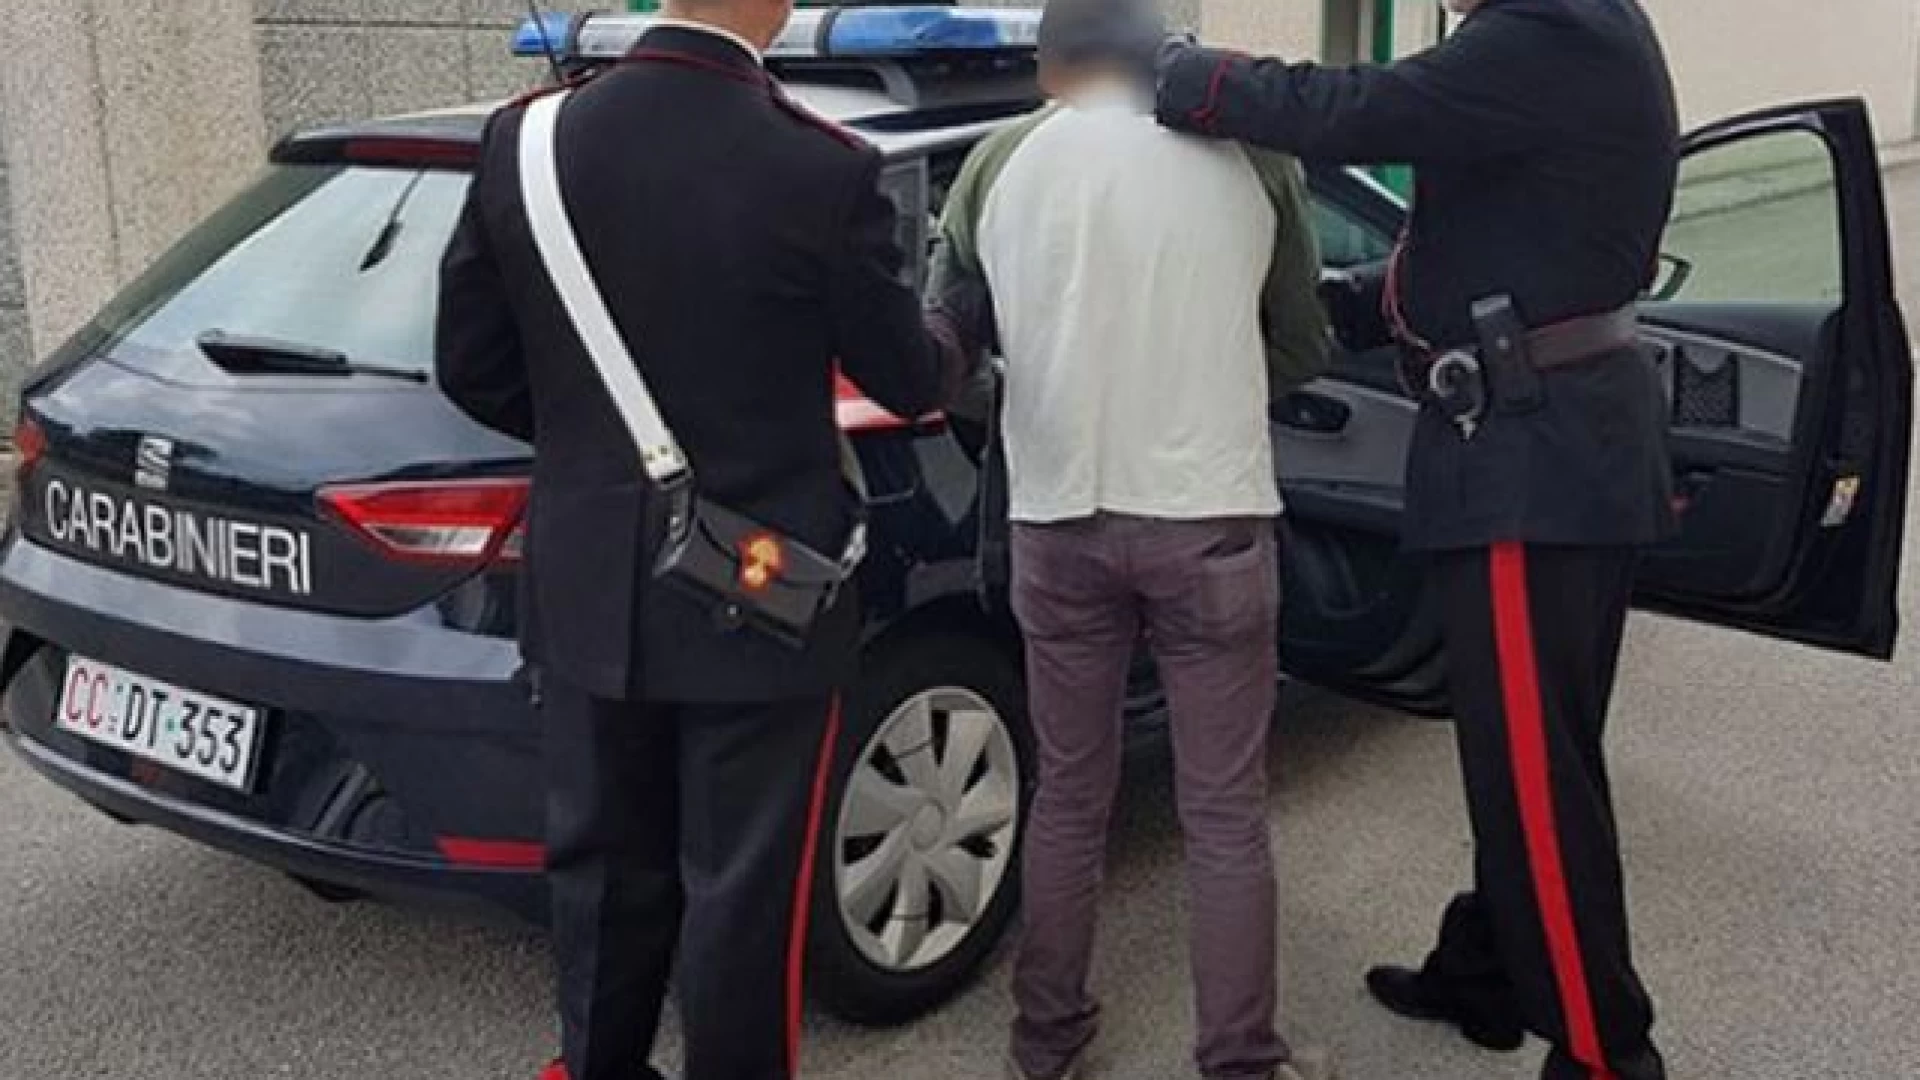 Avezzano: maxi operazione antidroga dei Carabinieri tre persone arrestate  